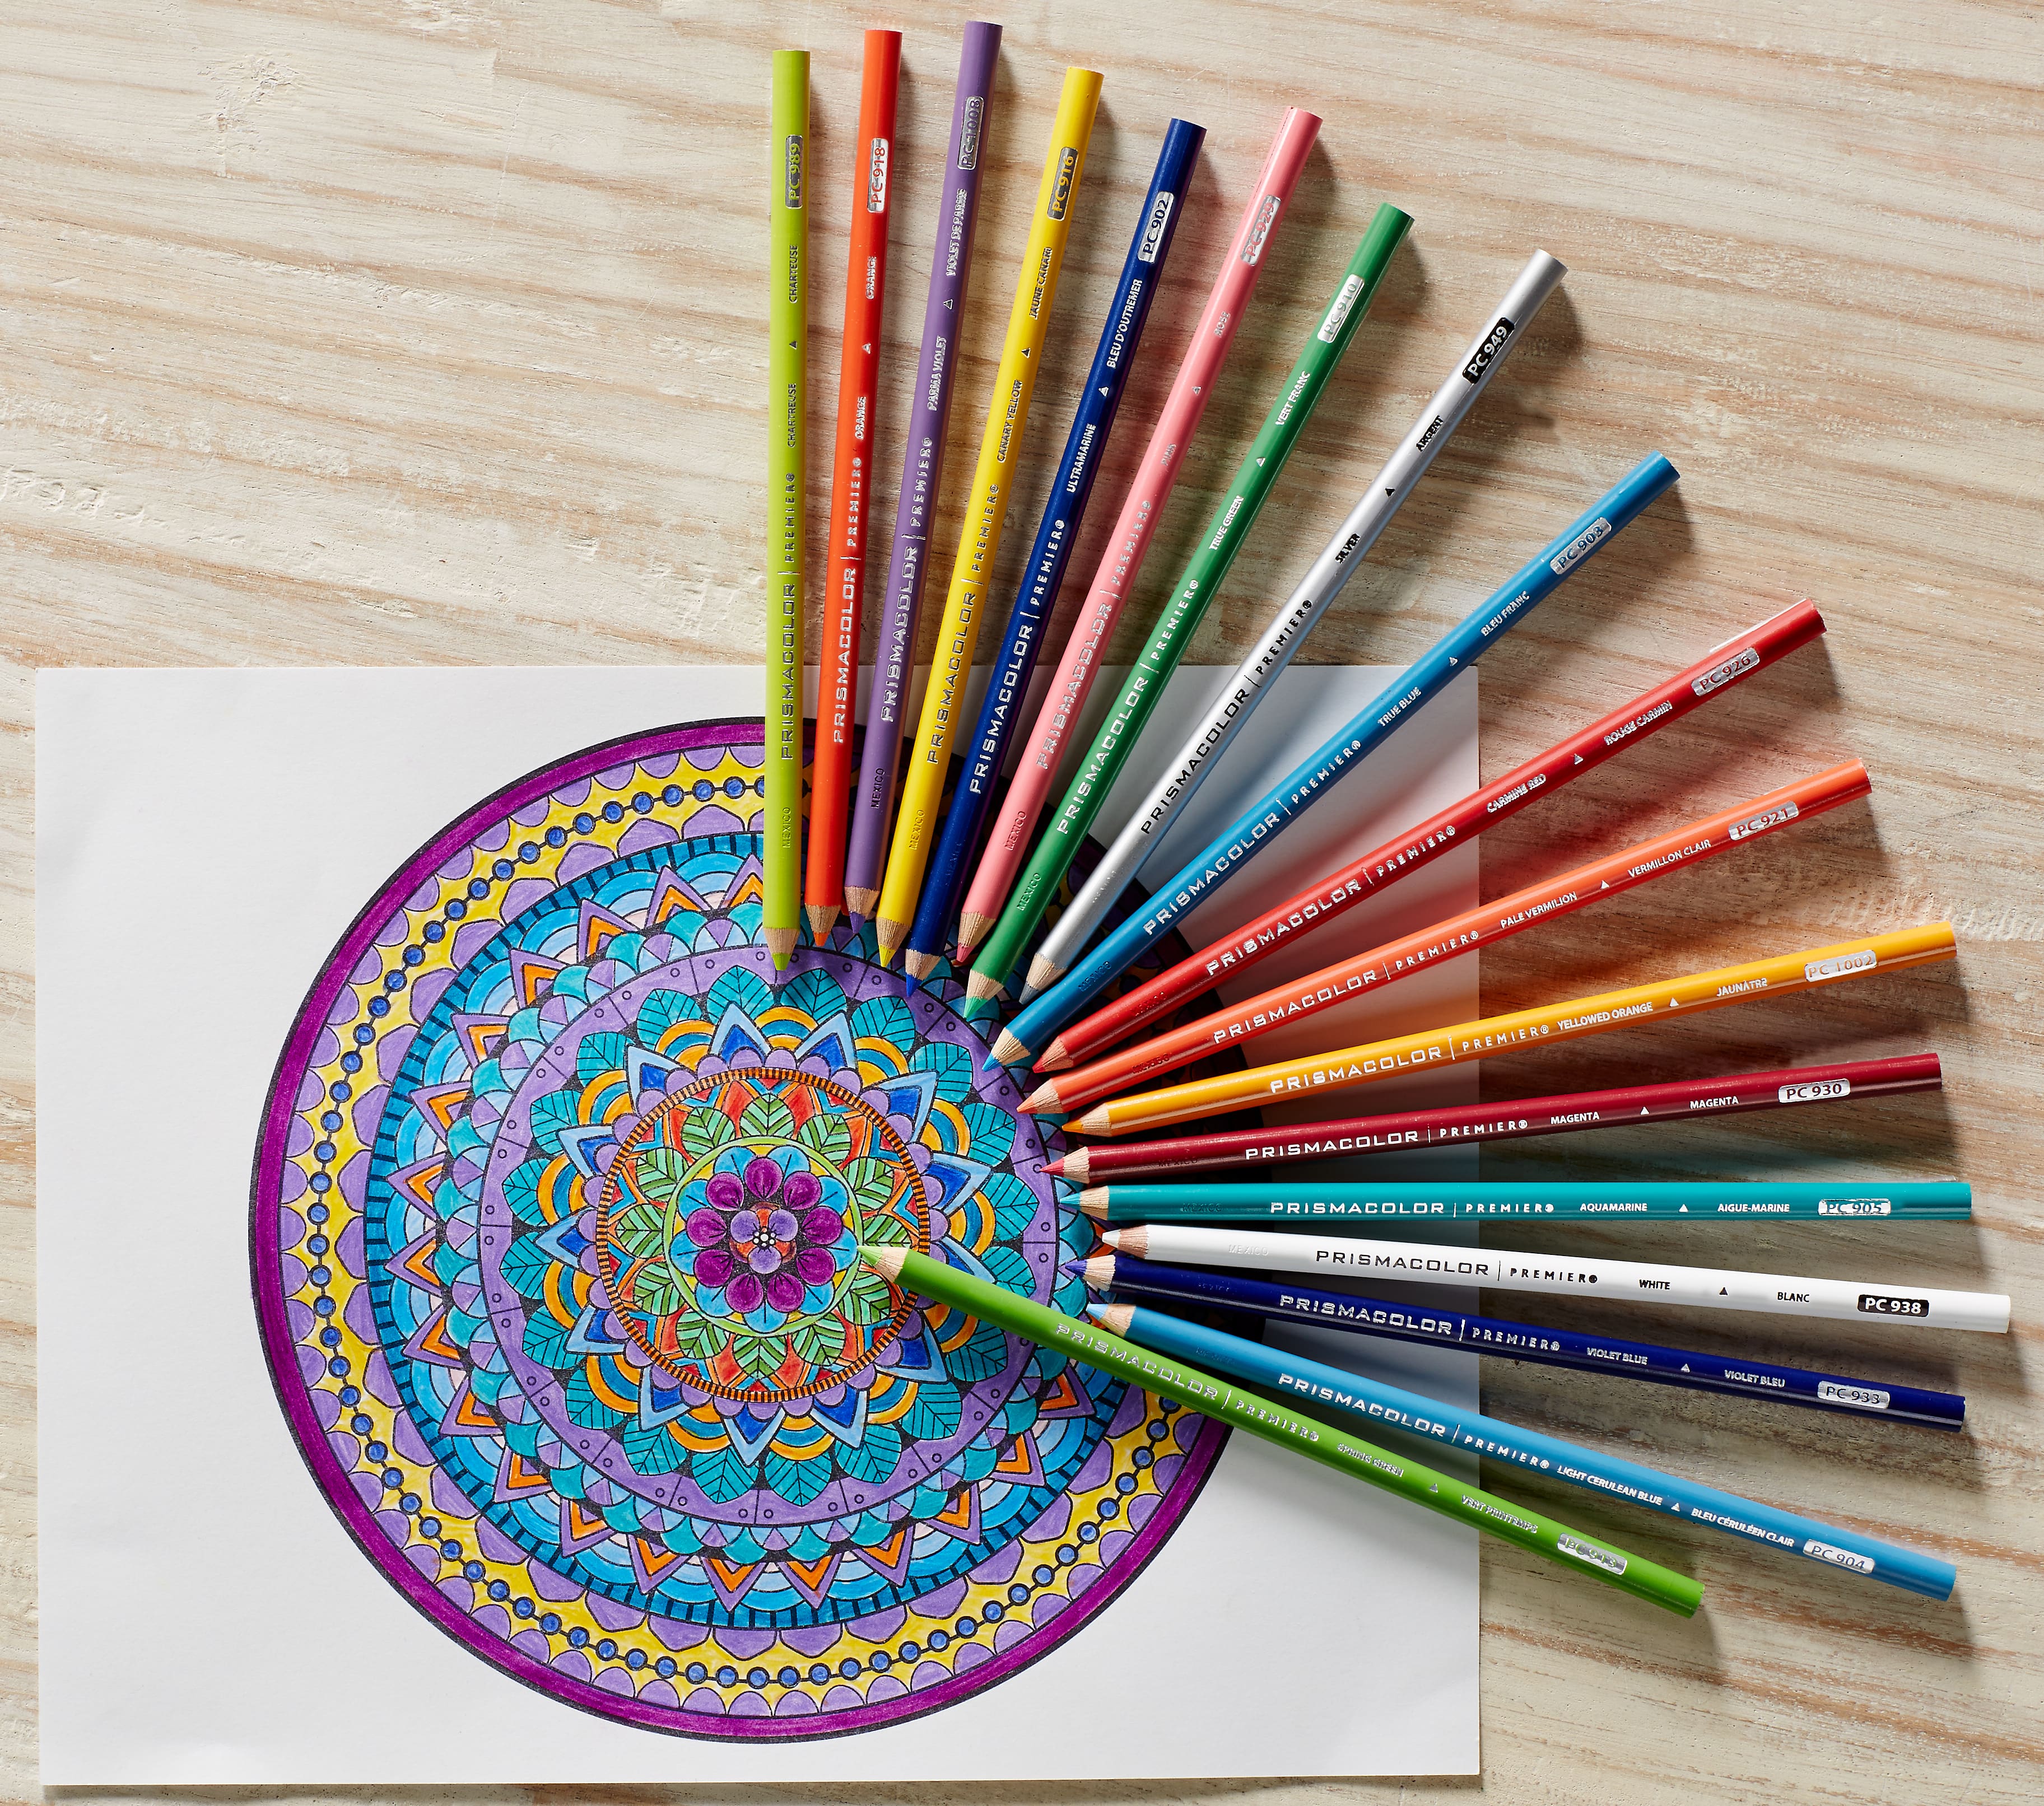 72 150 Prismacolor Artists Color Pencil Set Soft Core Colored Pencil  Colores Profesionales Crayon De Couleur School Art Supplies